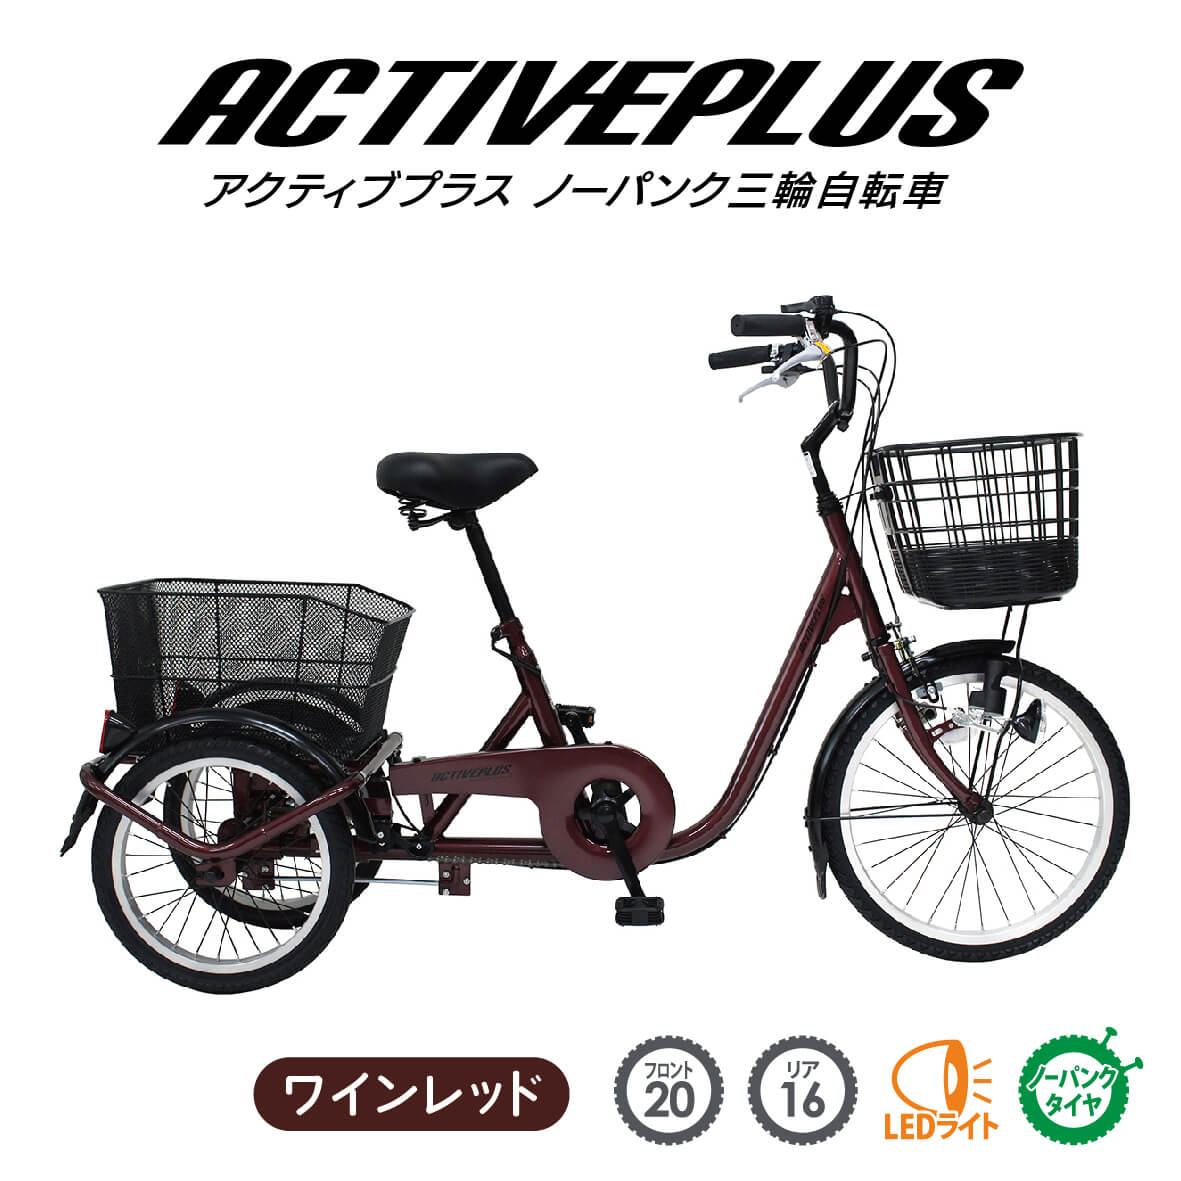 三輪自転車 自転車 大人用三輪車 ミムゴ ACTIVE PLUS ノーパンク三輪自転車L ノーパンクタイヤ シニア 3輪自転車 完全組立配送も選べます